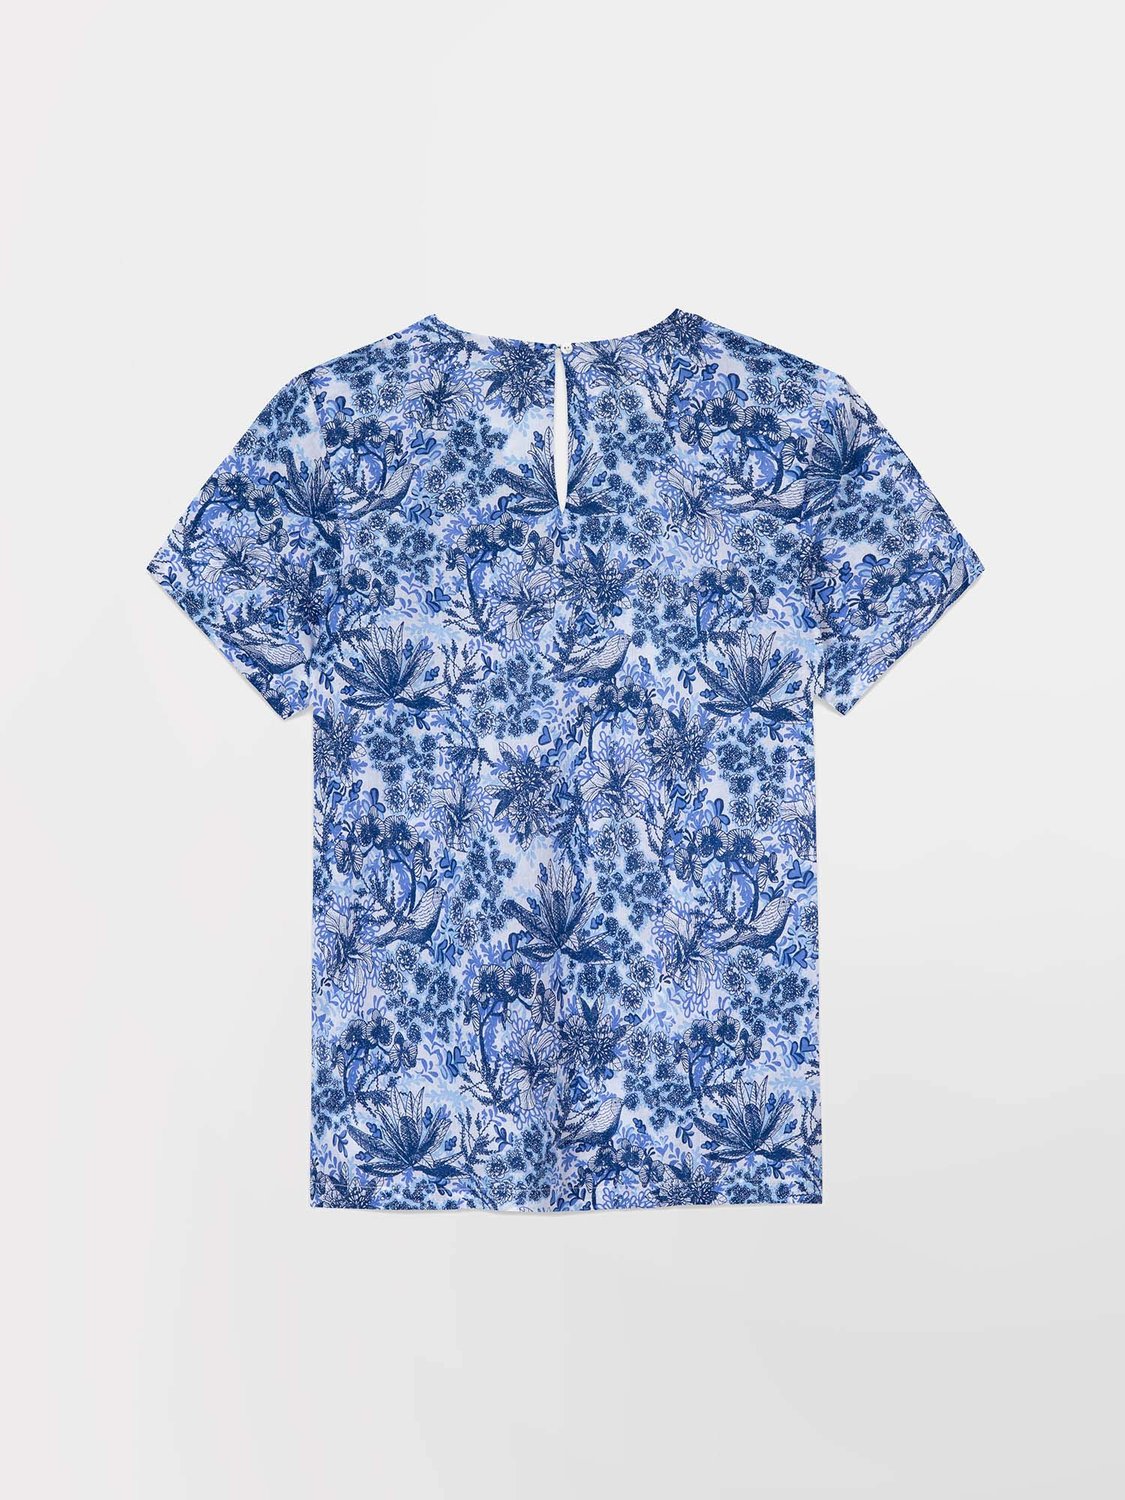 Blouse Femme Toile Coton Motif Floral Bleu